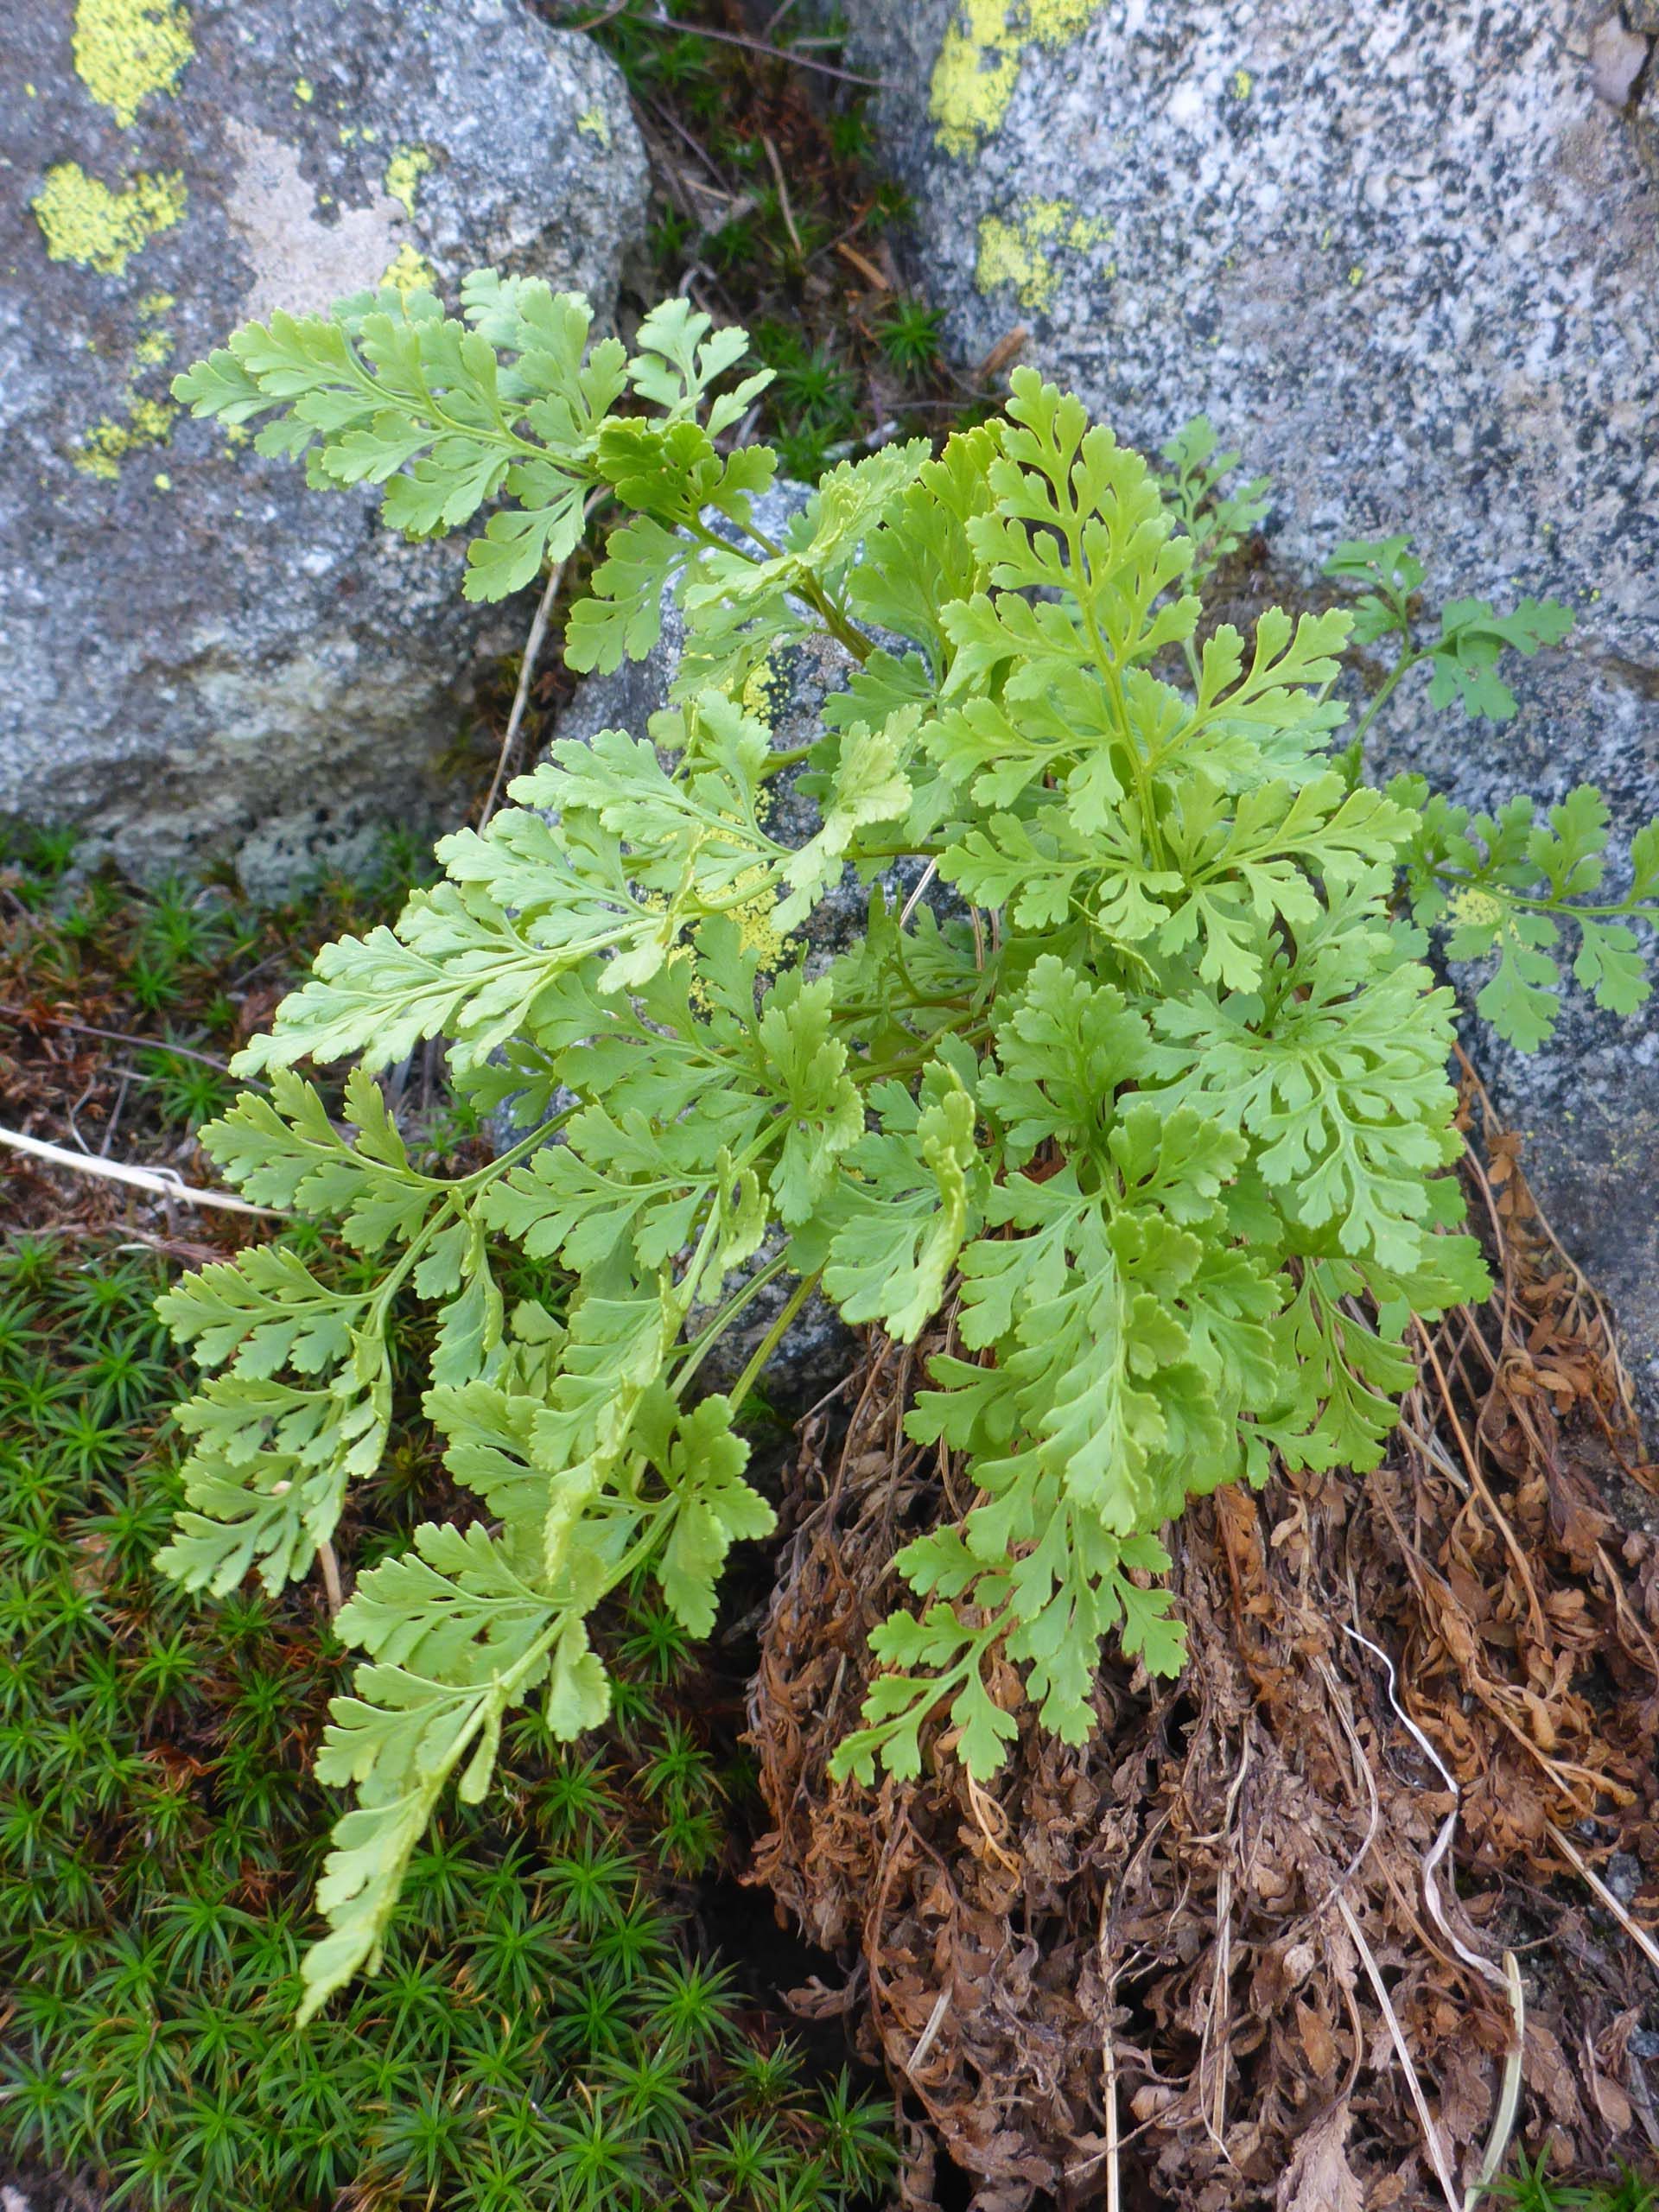 American parsley fern. D. Burk.